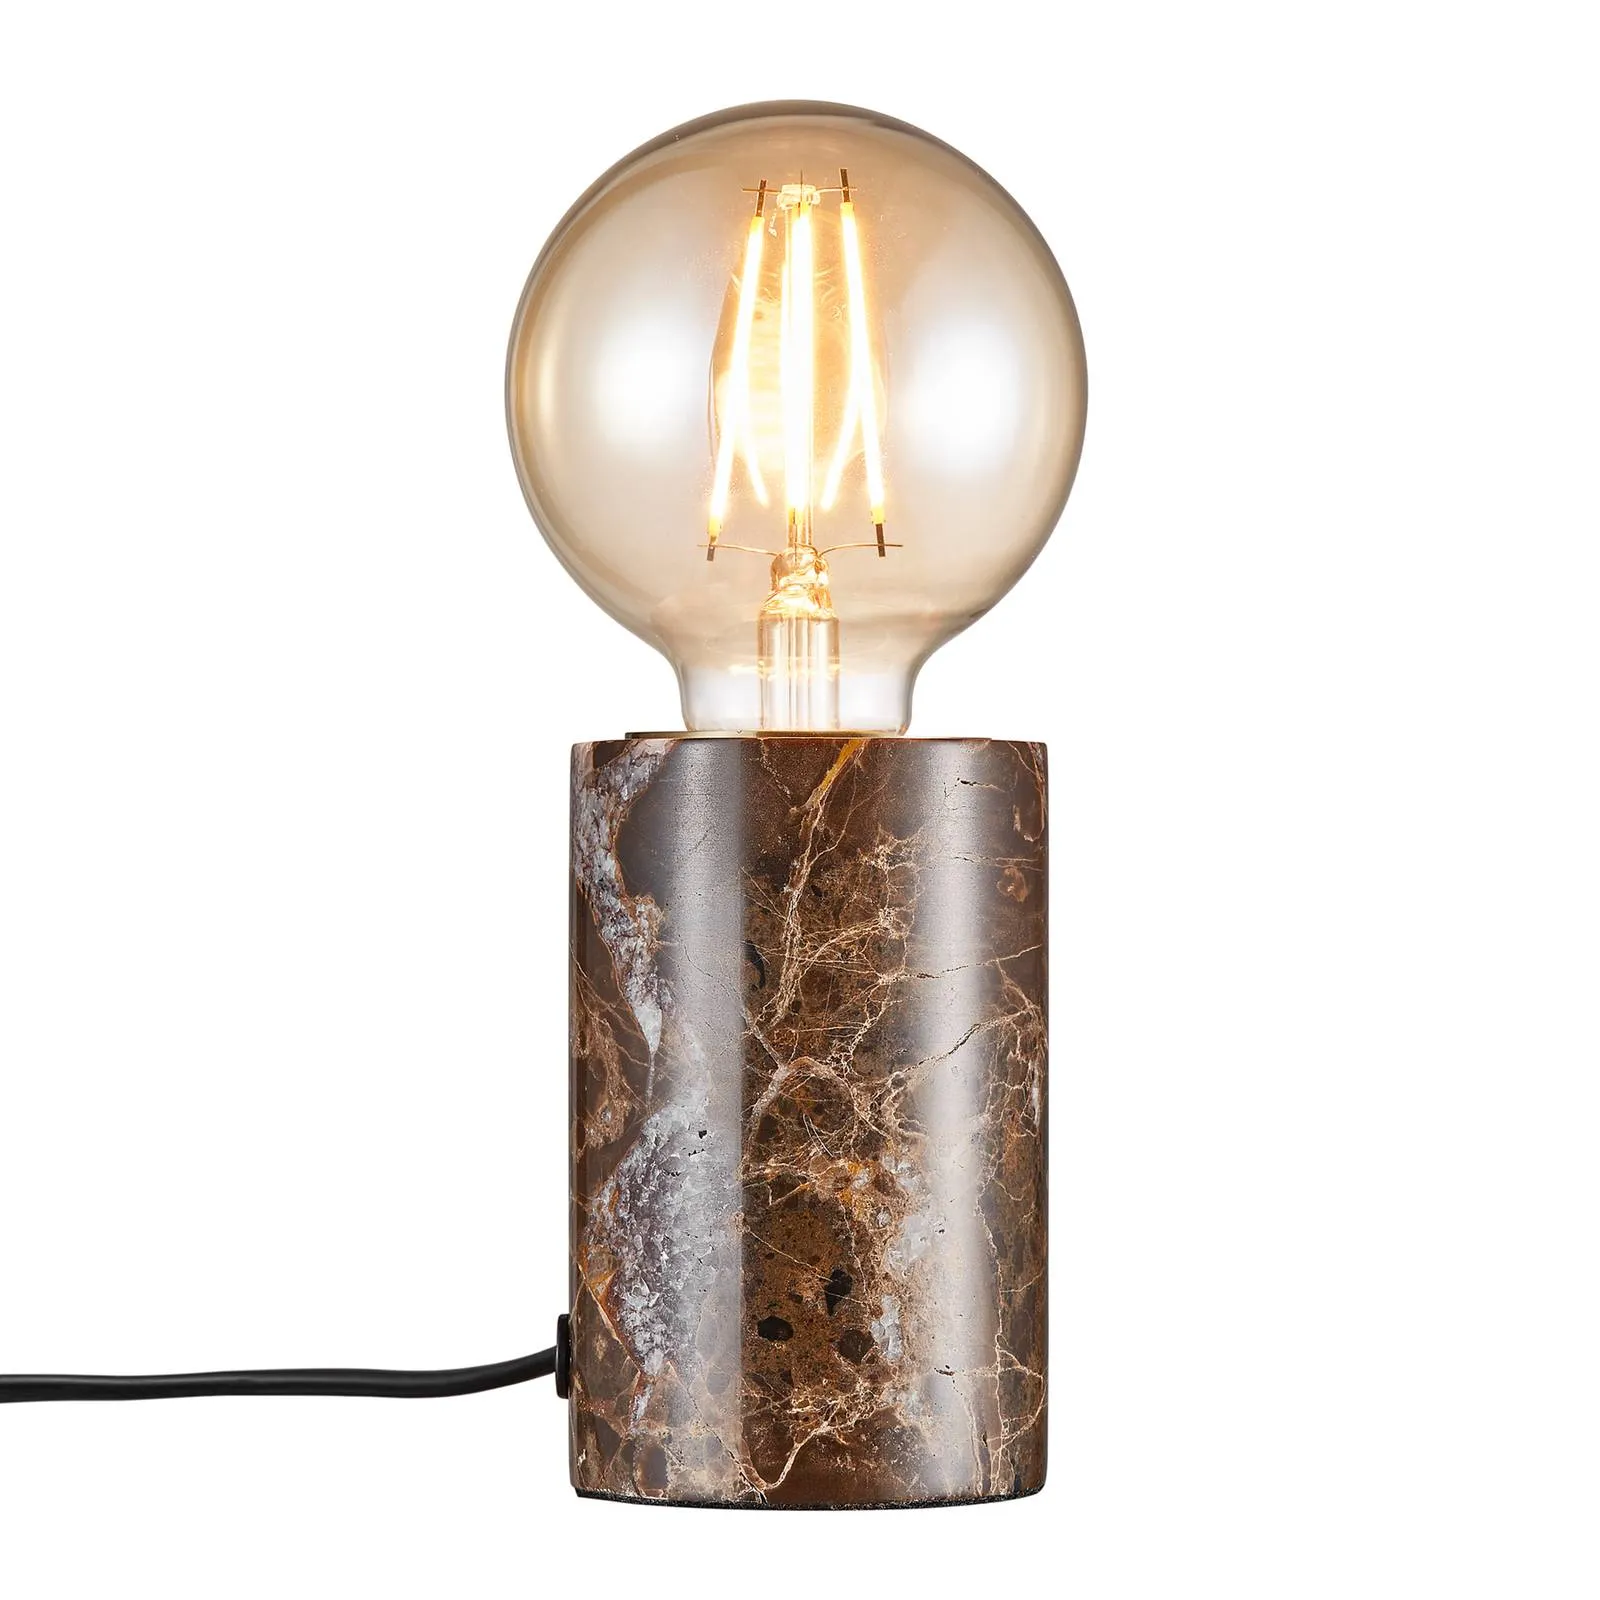  Lampada da tavolo Siv con cilindro marmo, marrone